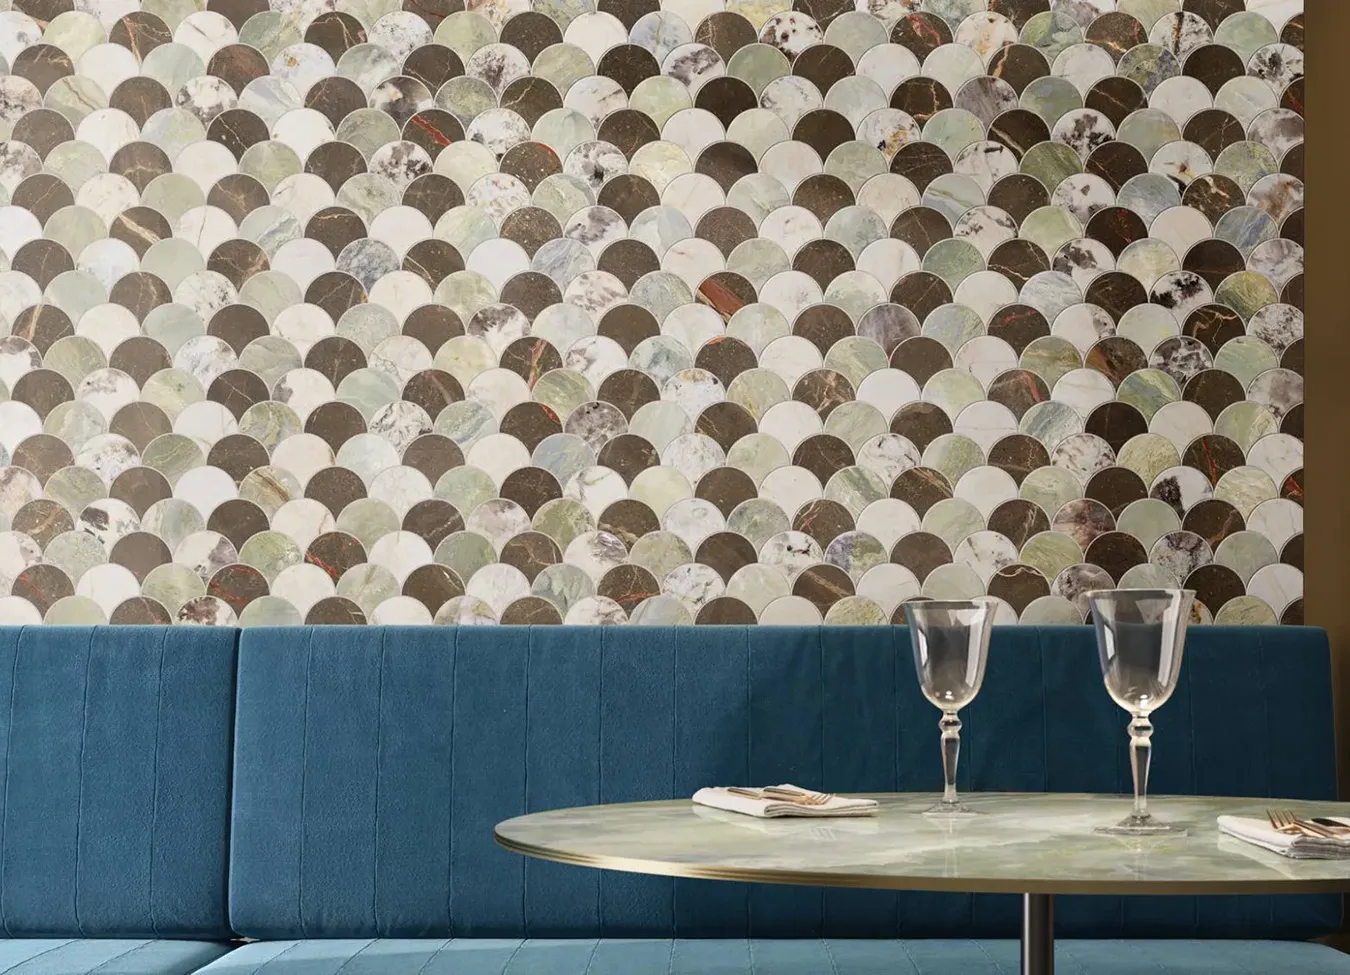 Pared de gres efecto mármol con diseño mosaico de la colección 9cento en un entorno de restaurante elegante.